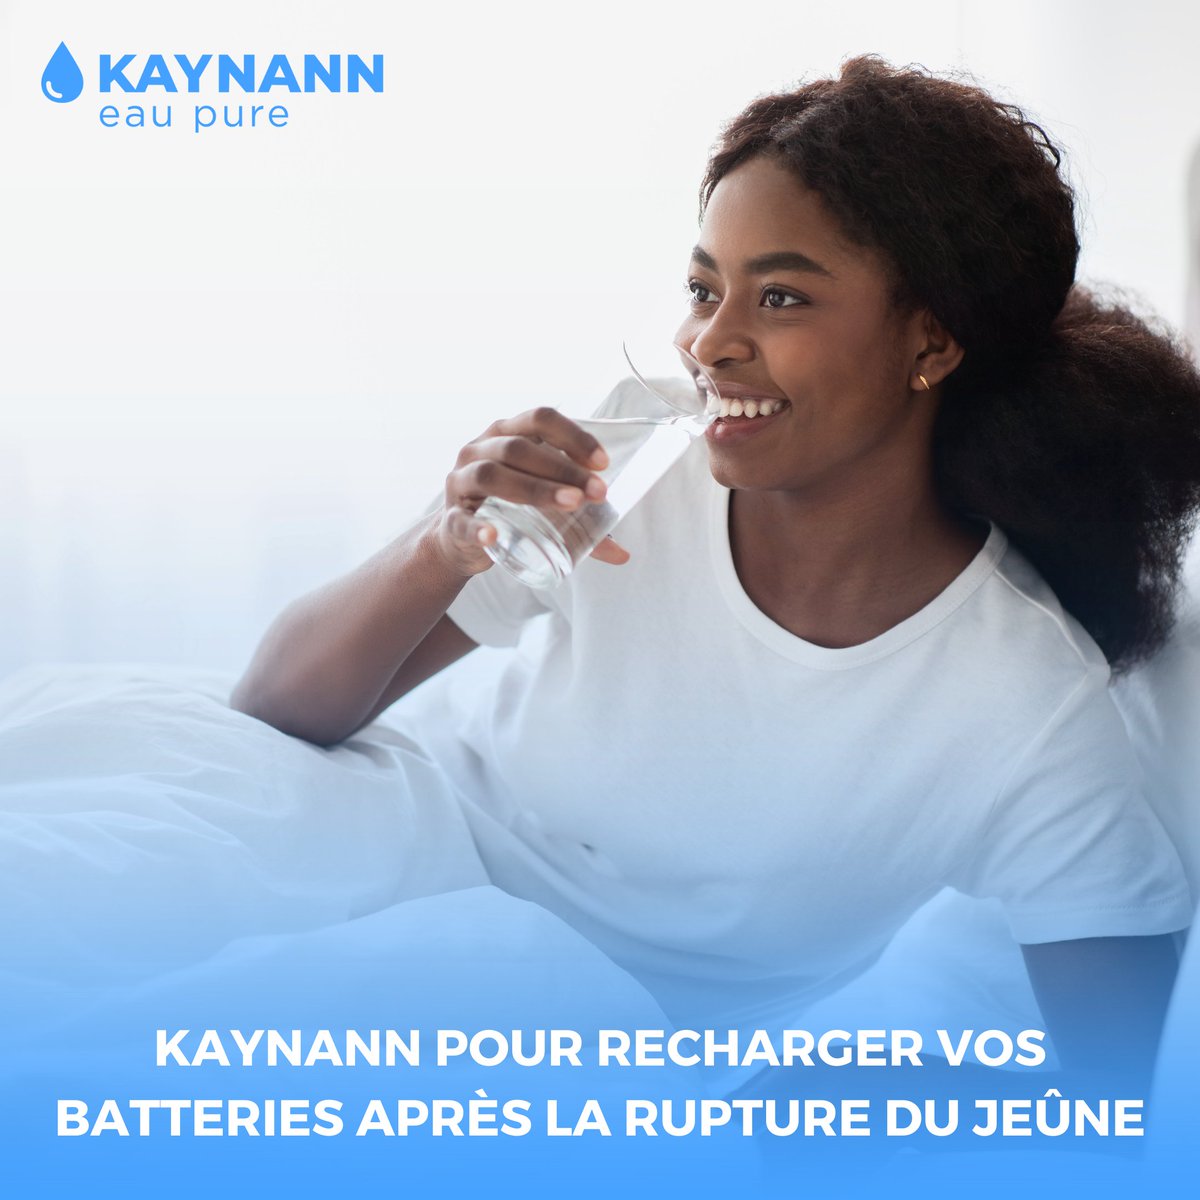 Besoin de recharger vos batteries après le jeûne ? Optez pour KAYNANN ! 💧

Avec sa pureté inégalée, KAYNANN vous offre une hydratation optimale pour rester en forme et plein d'énergie.

#KAYNANN #EauPure #Jeûne